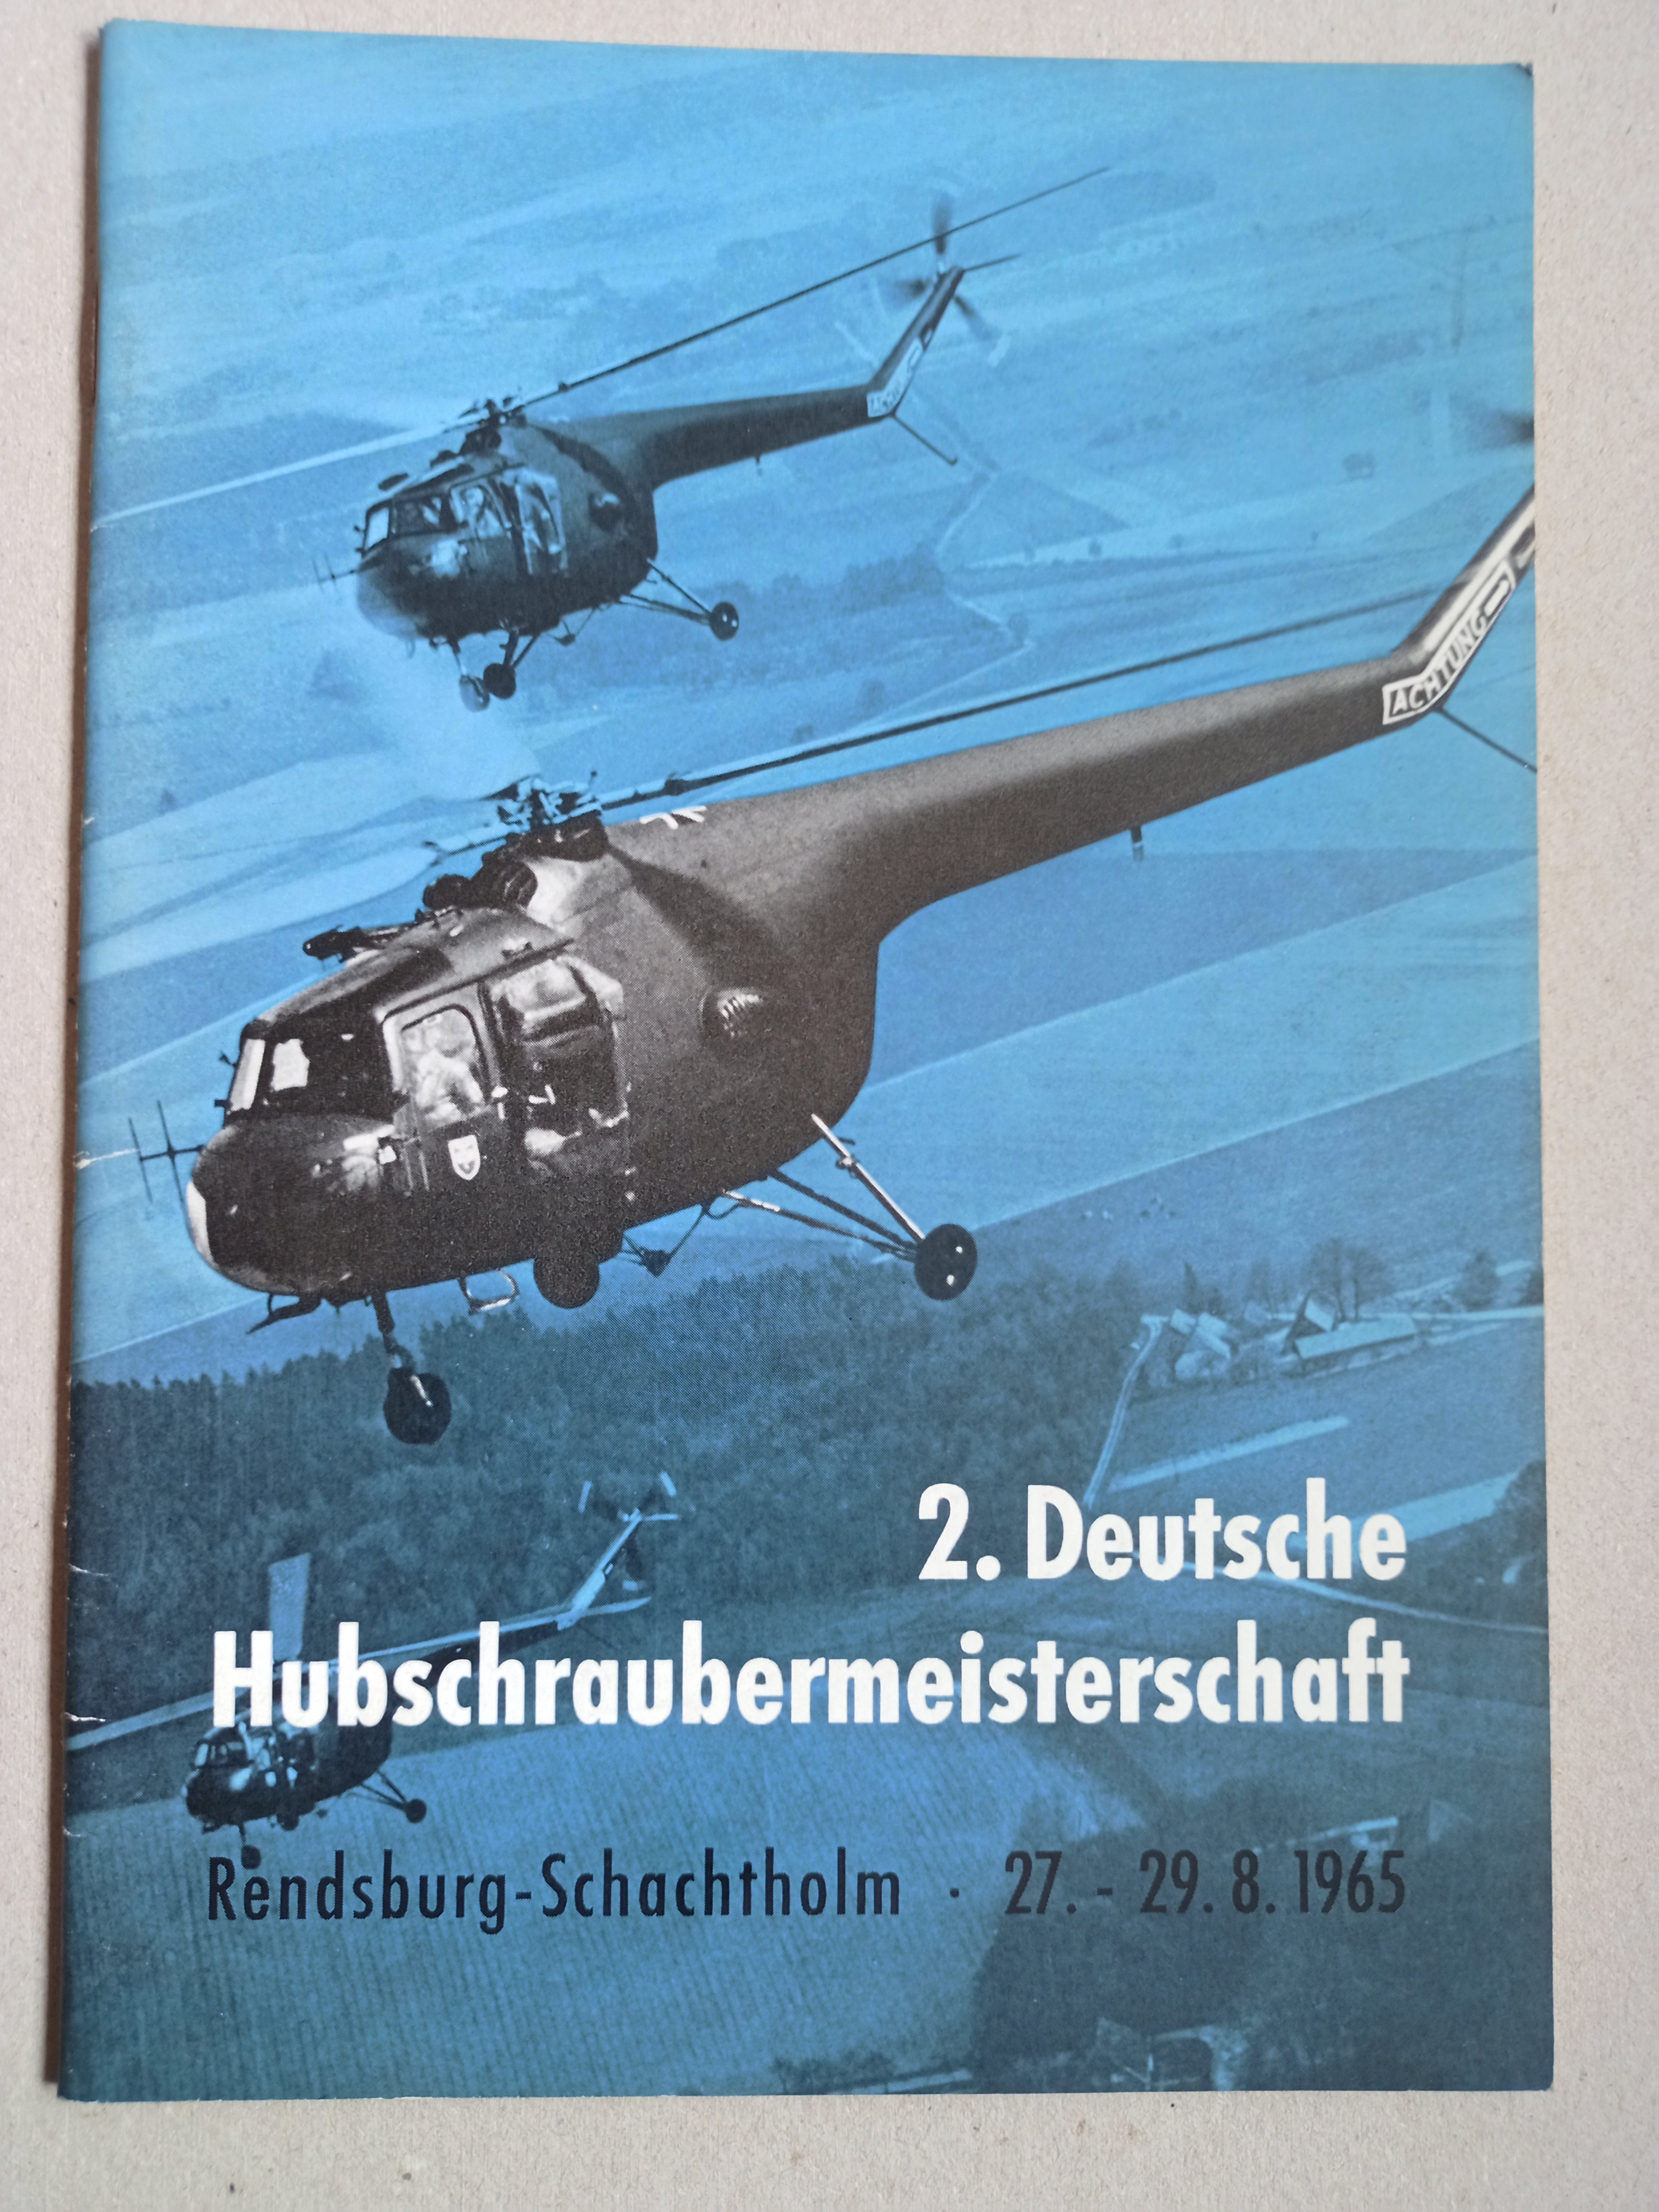 DM Hubschrauber 1965 Rendsburg (Deutsches Segelflugmuseum mit Modellflug CC BY-NC-SA)